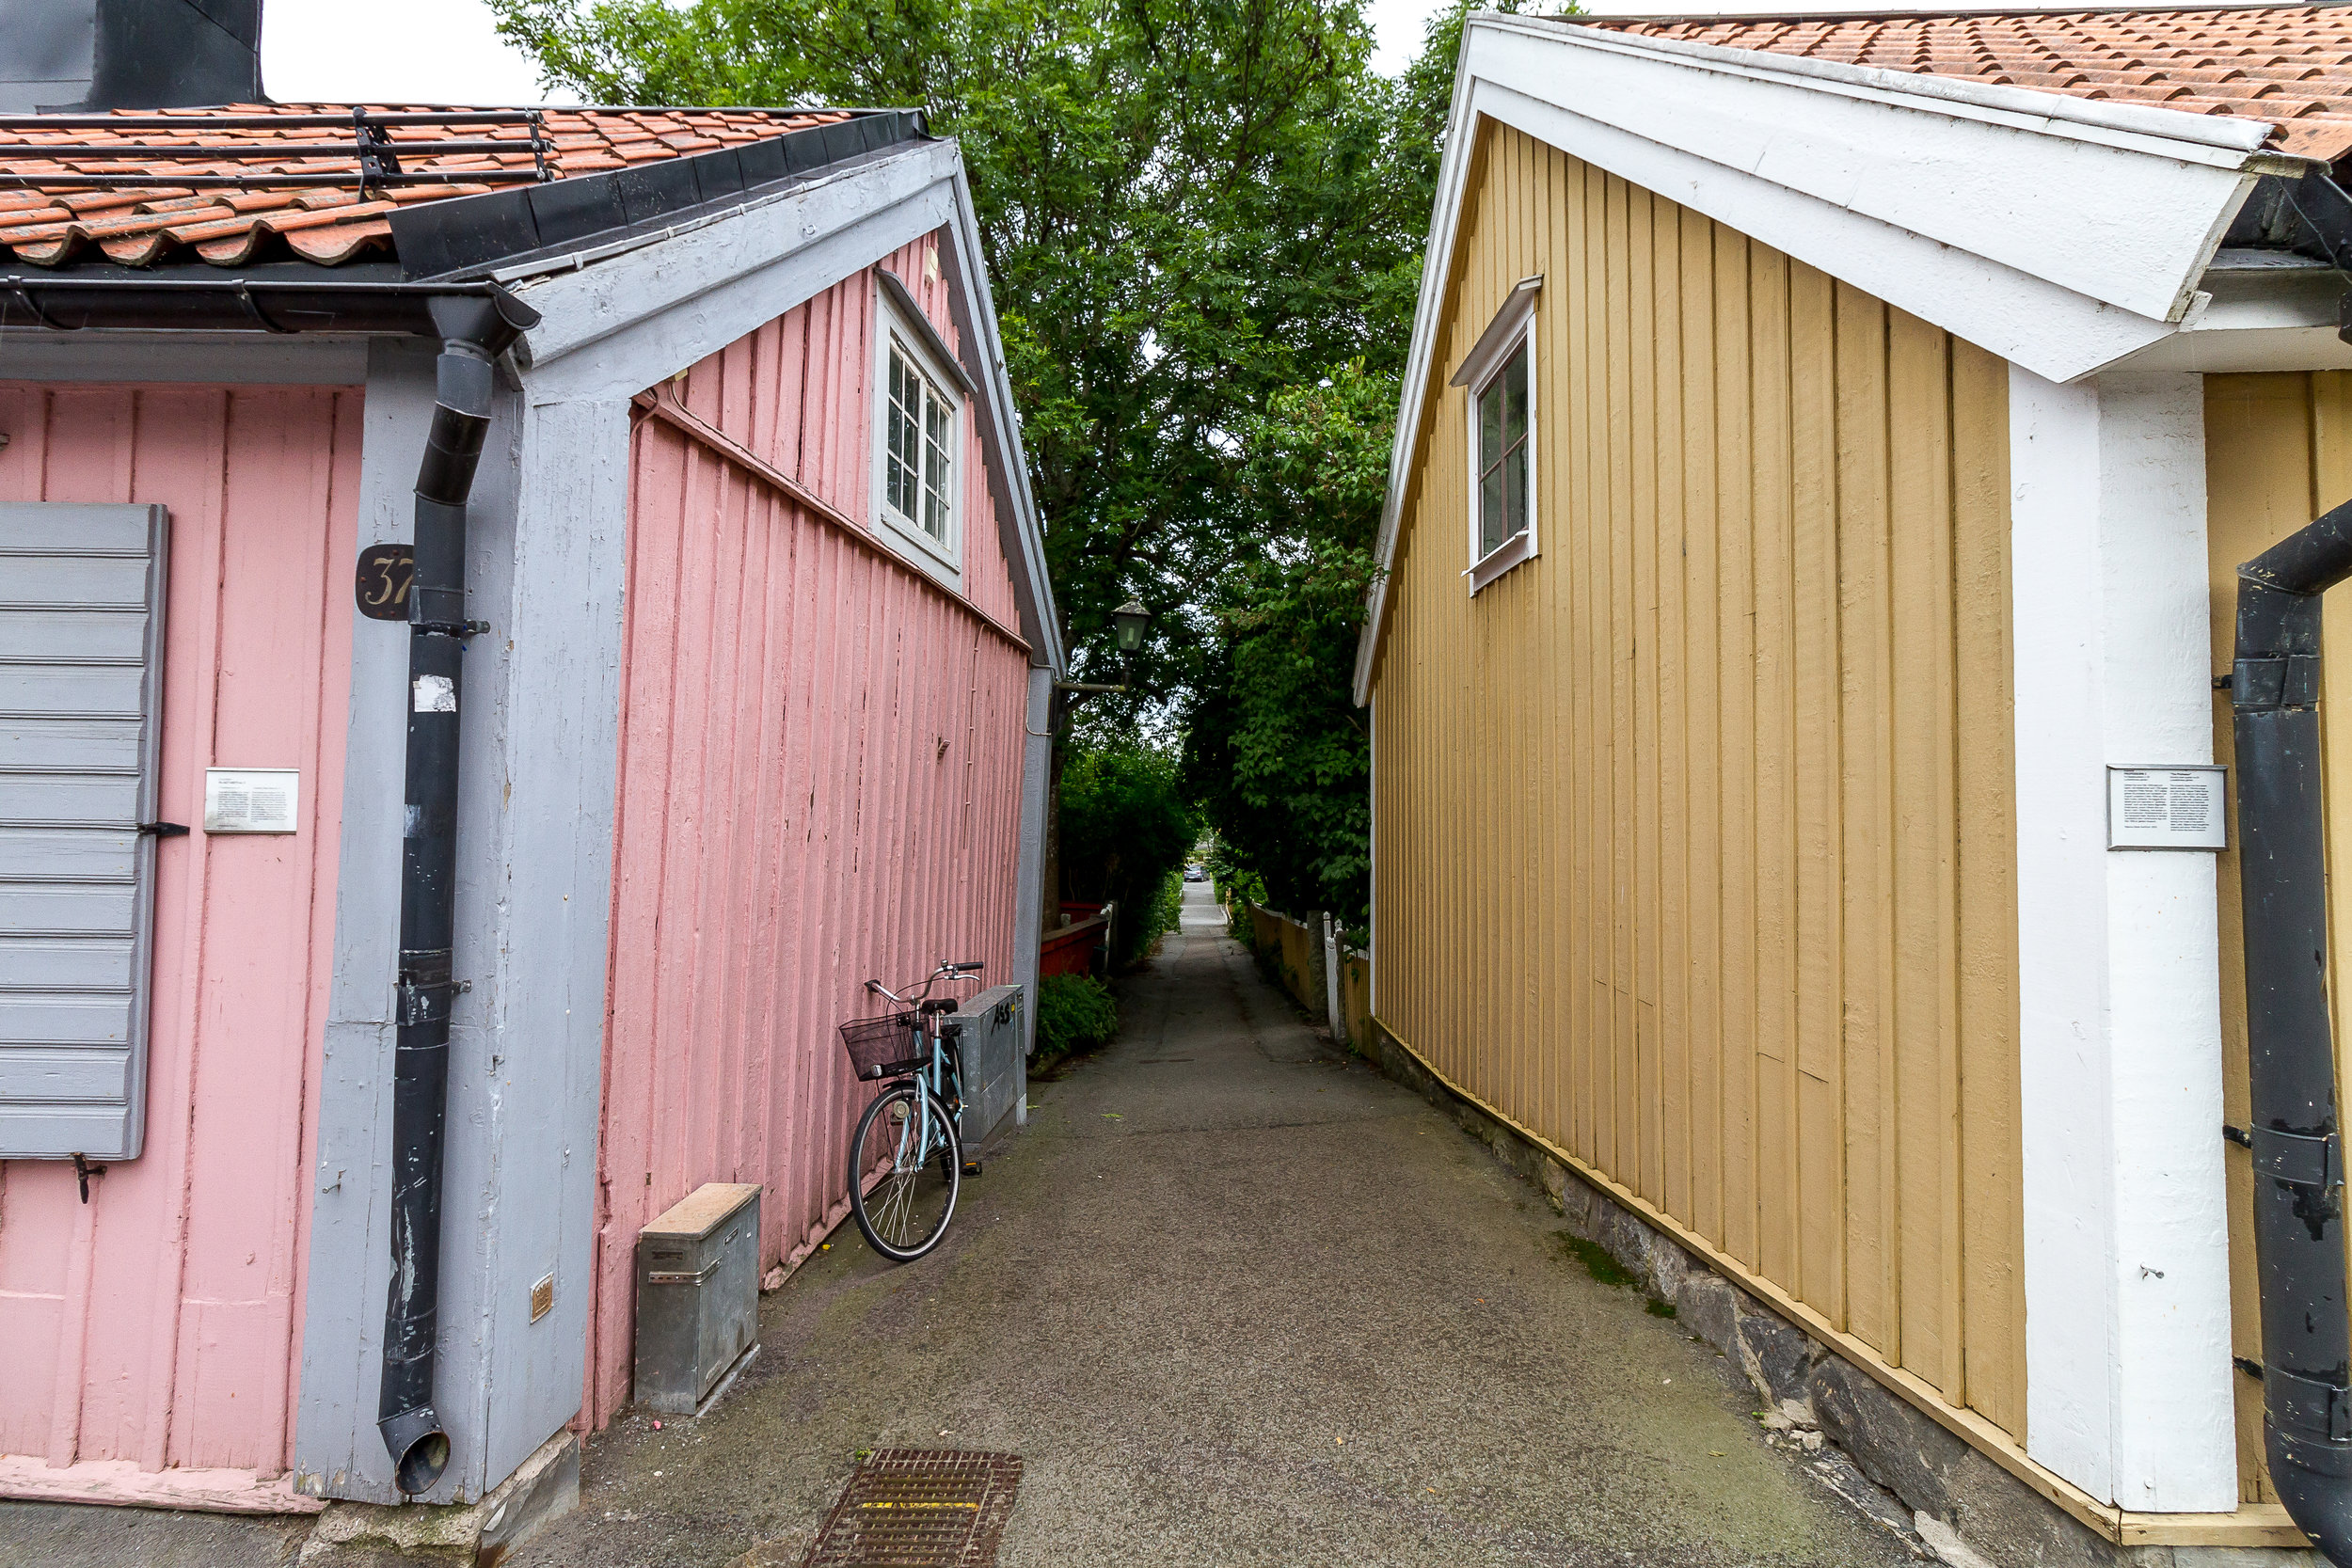 Sigtuna, Sweden (2016)